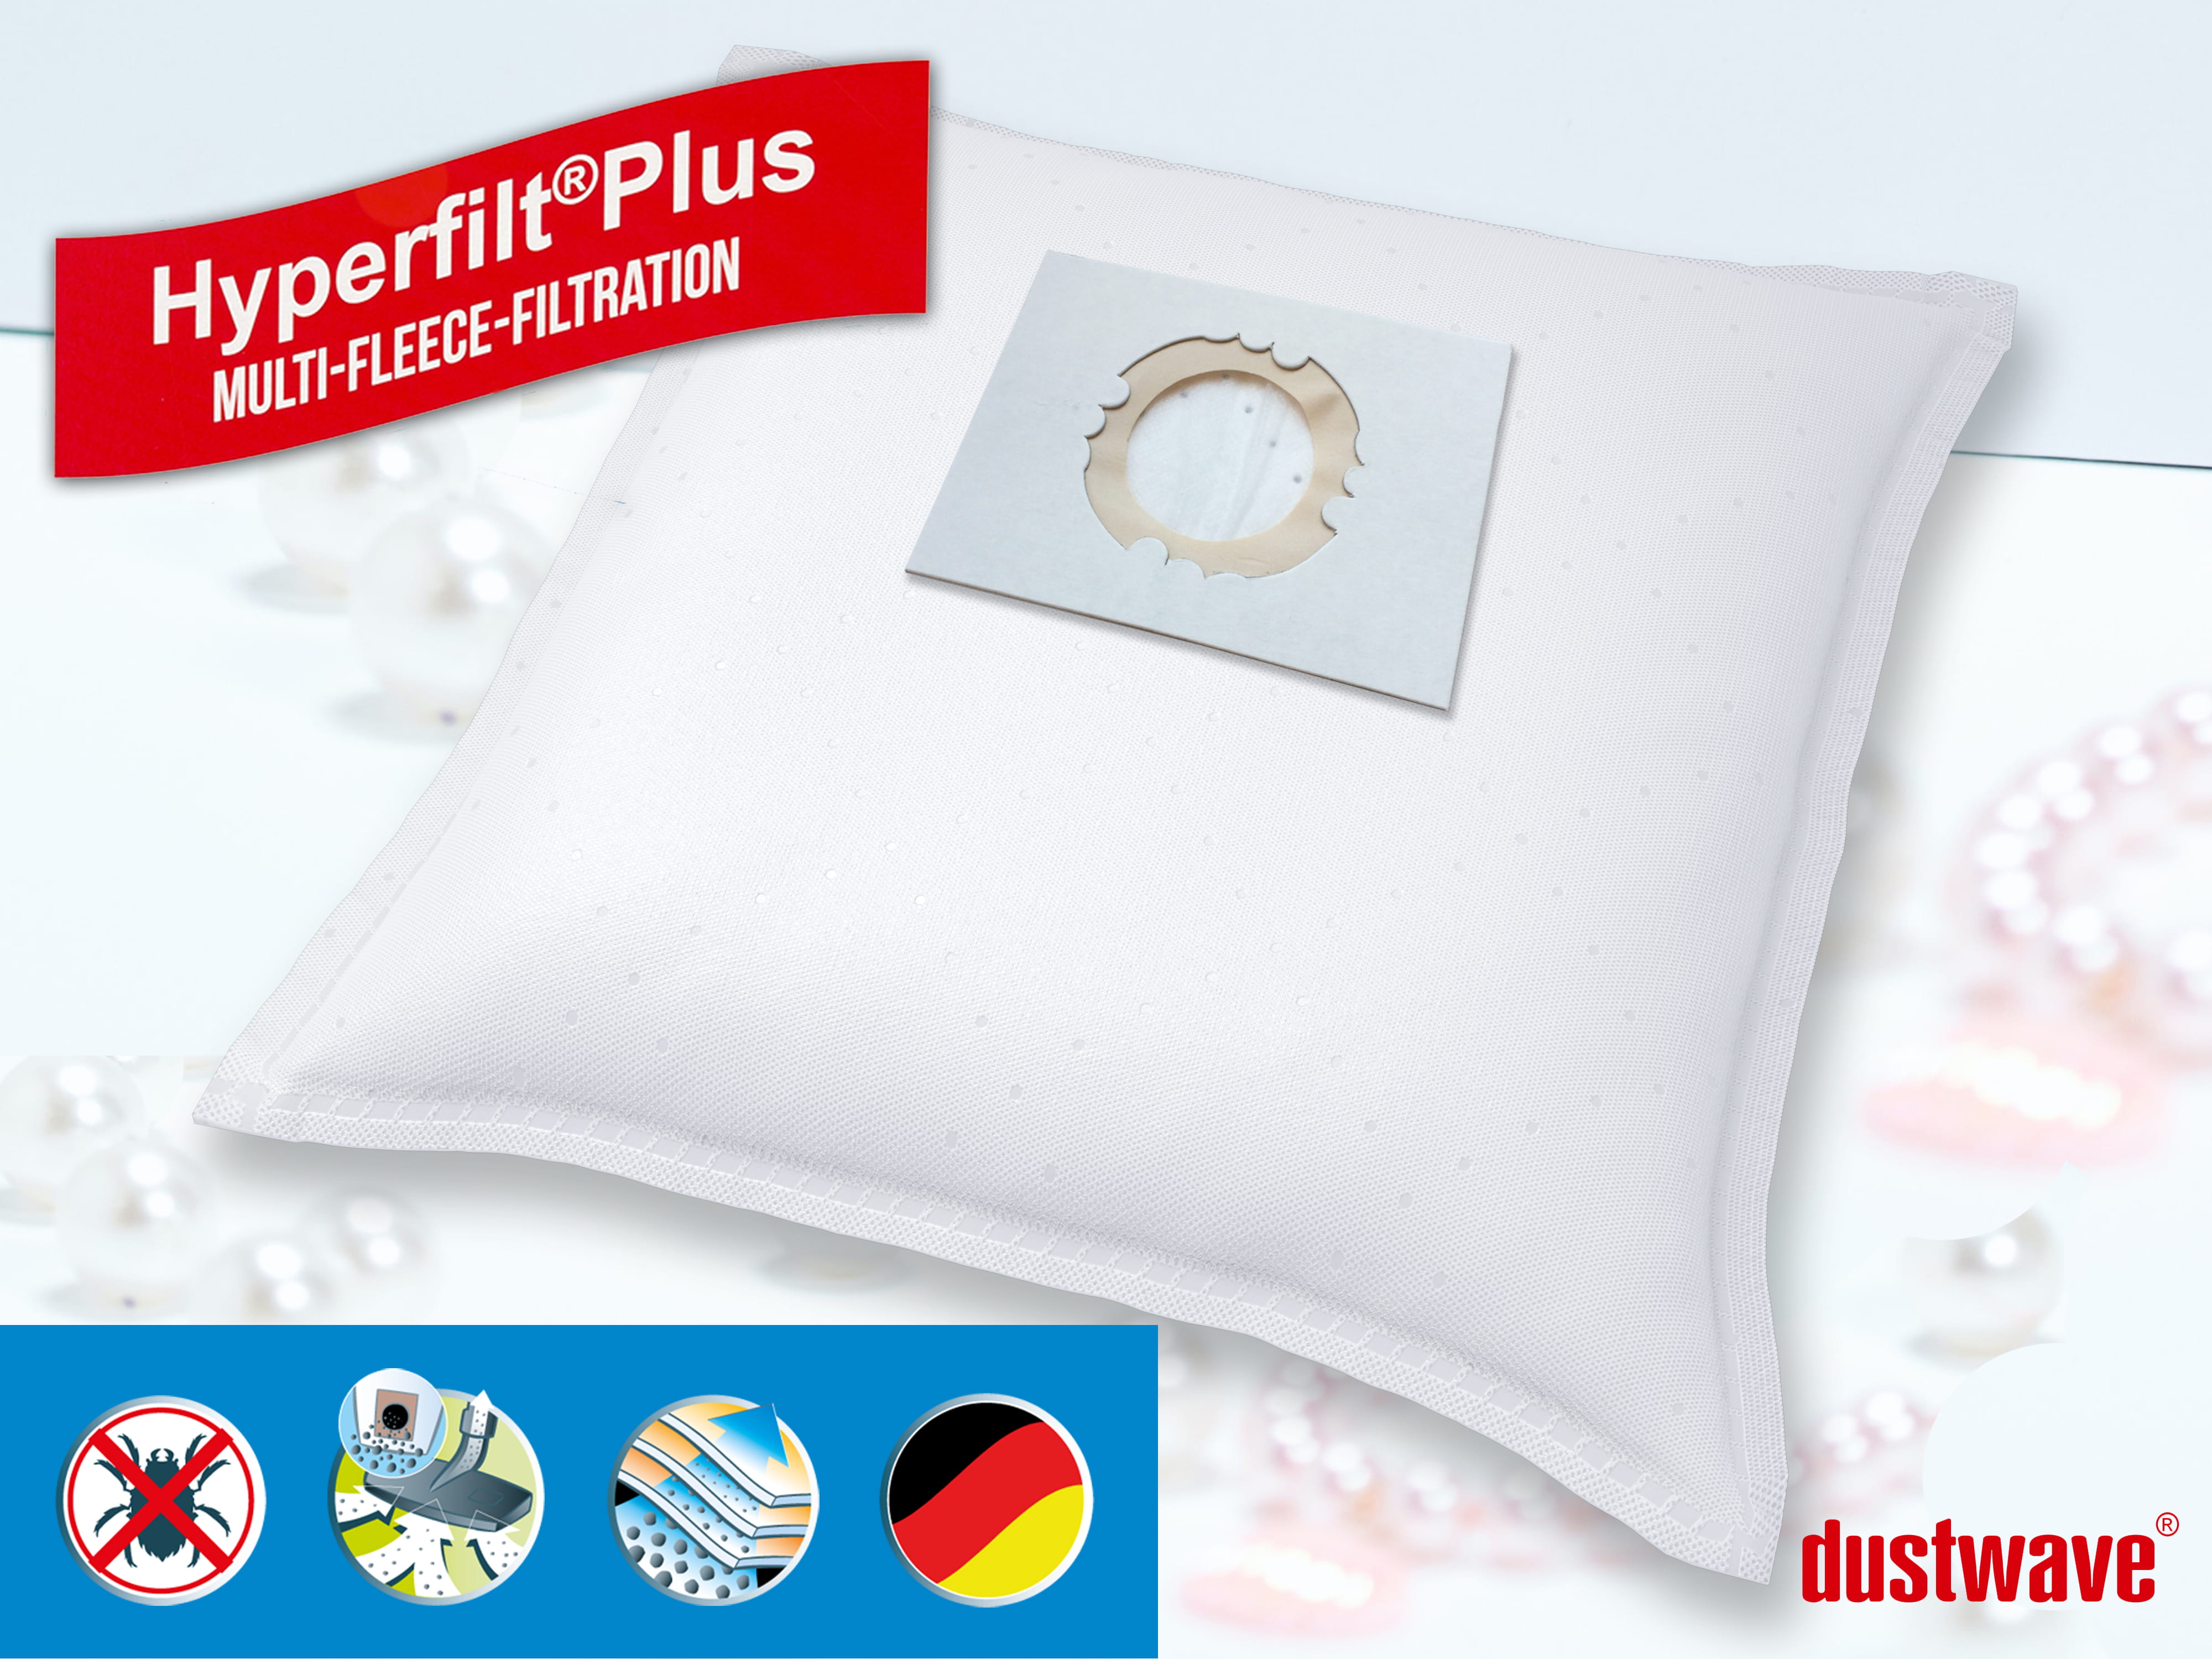 Dustwave® 10 Staubsaugerbeutel für Hoover BD S5135 011 - hocheffizient, mehrlagiges Mikrovlies mit Hygieneverschluss - Made in Germany